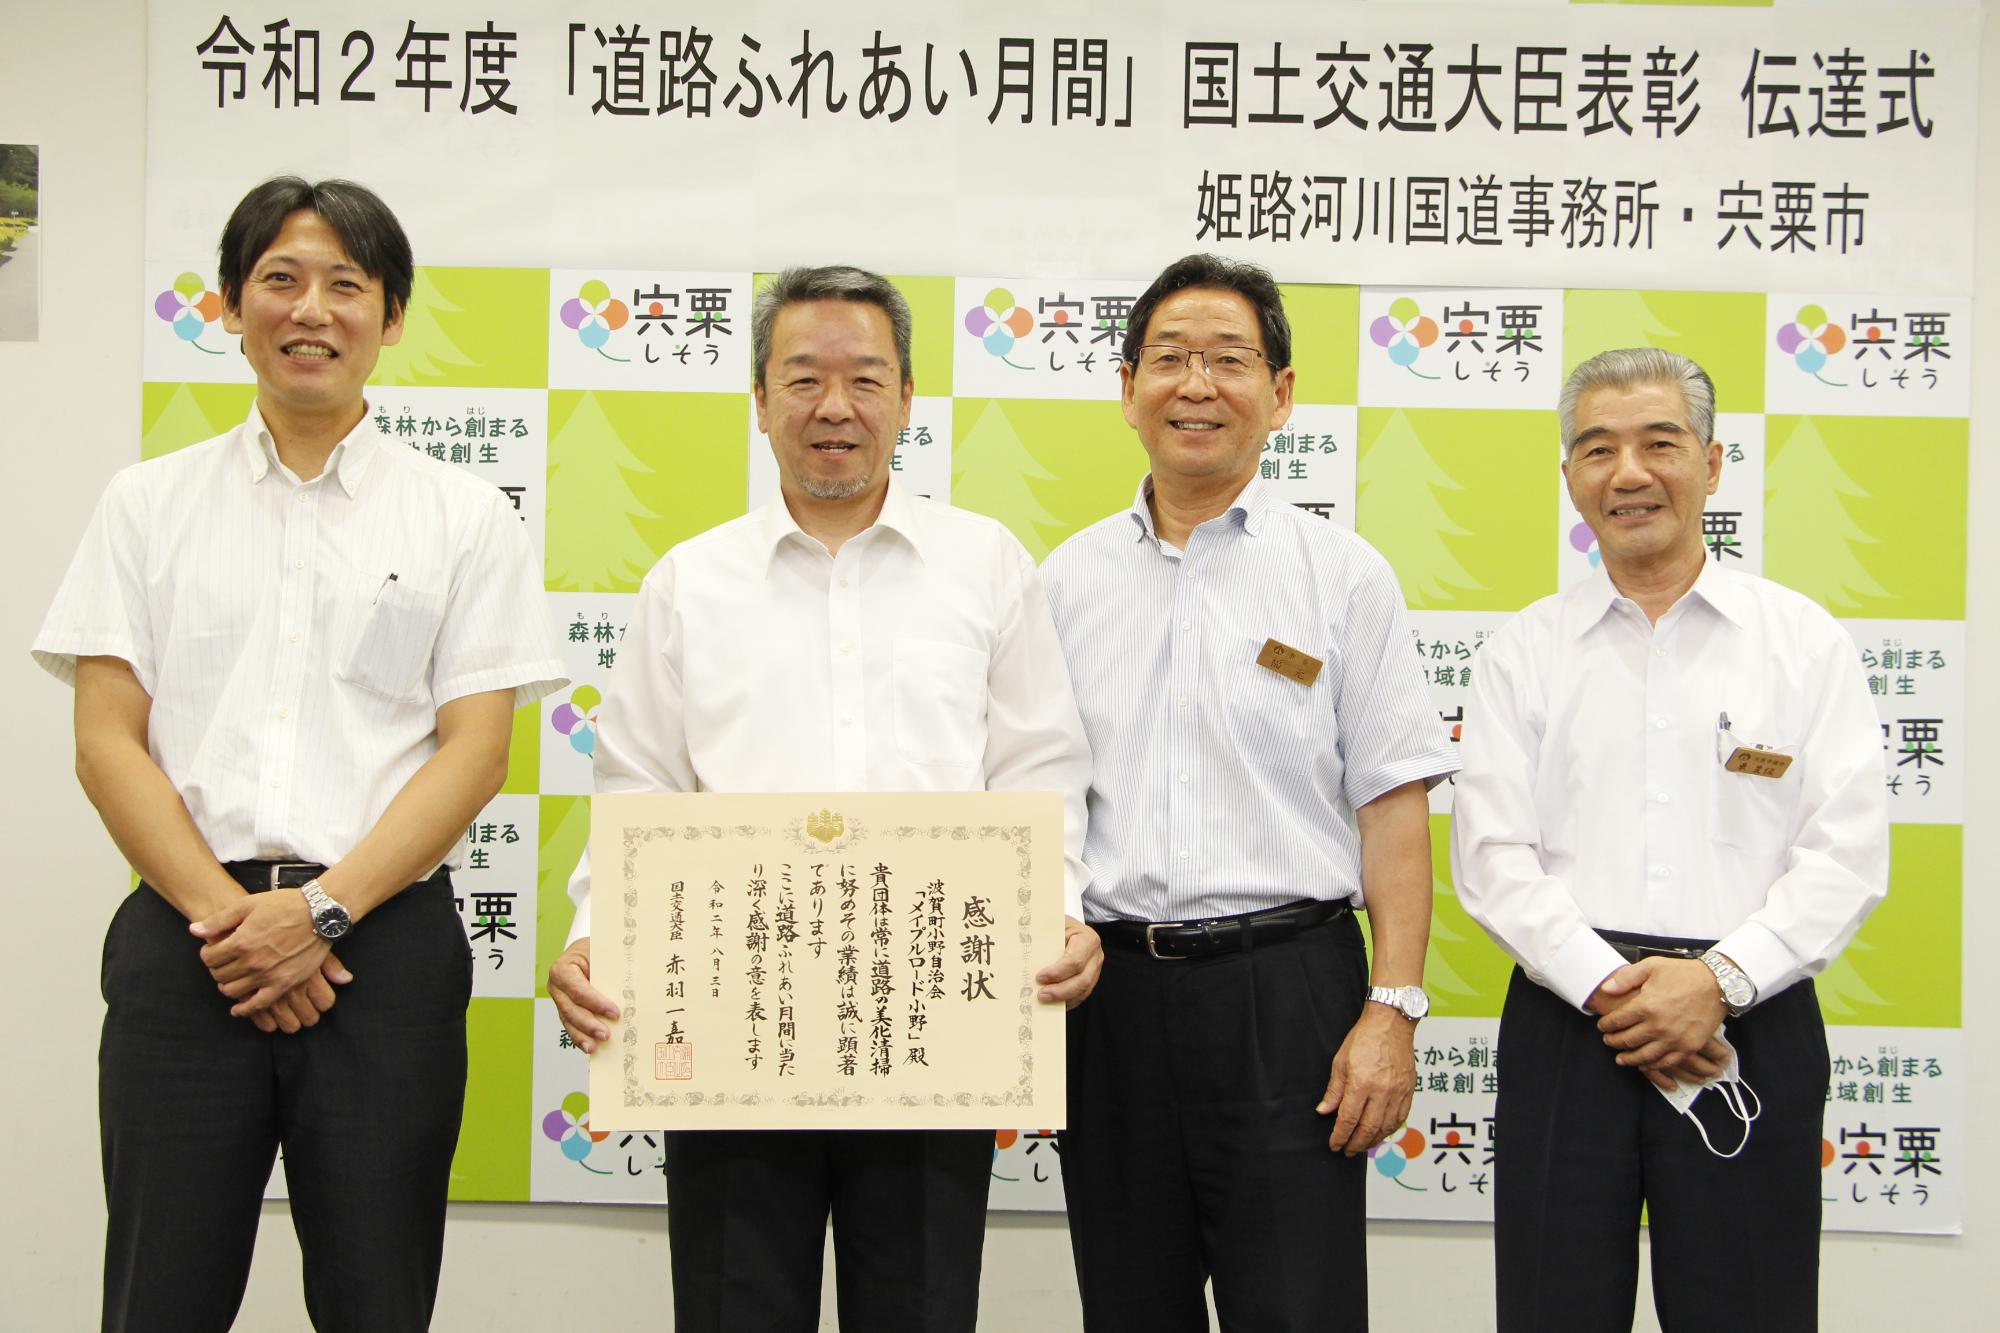 左から姫路河川国道事務所長、感謝状を手にした小野自治会長、市長、東議長が並んでいる写真